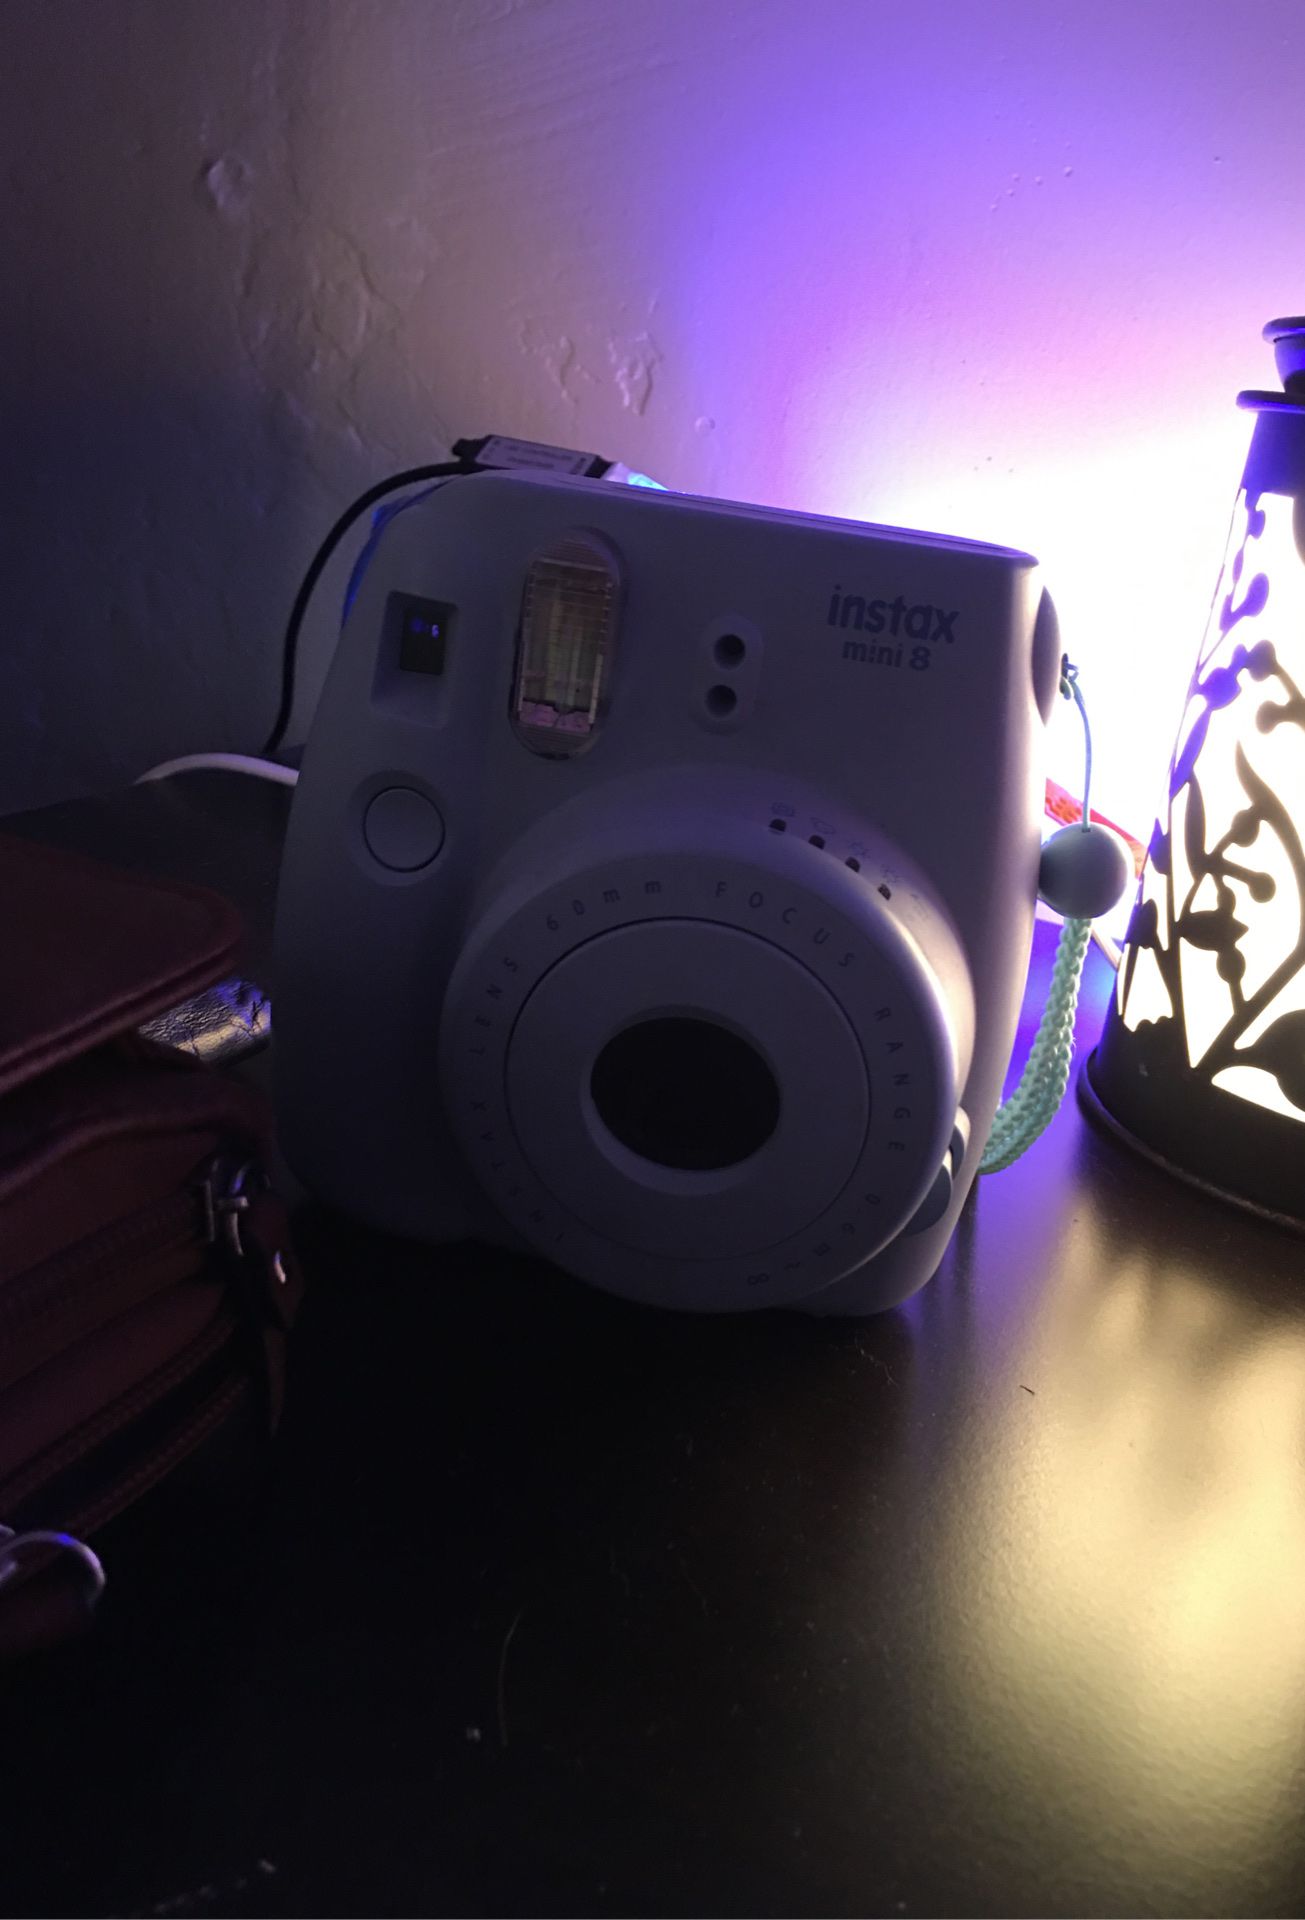 Baby blue Polaroid camera